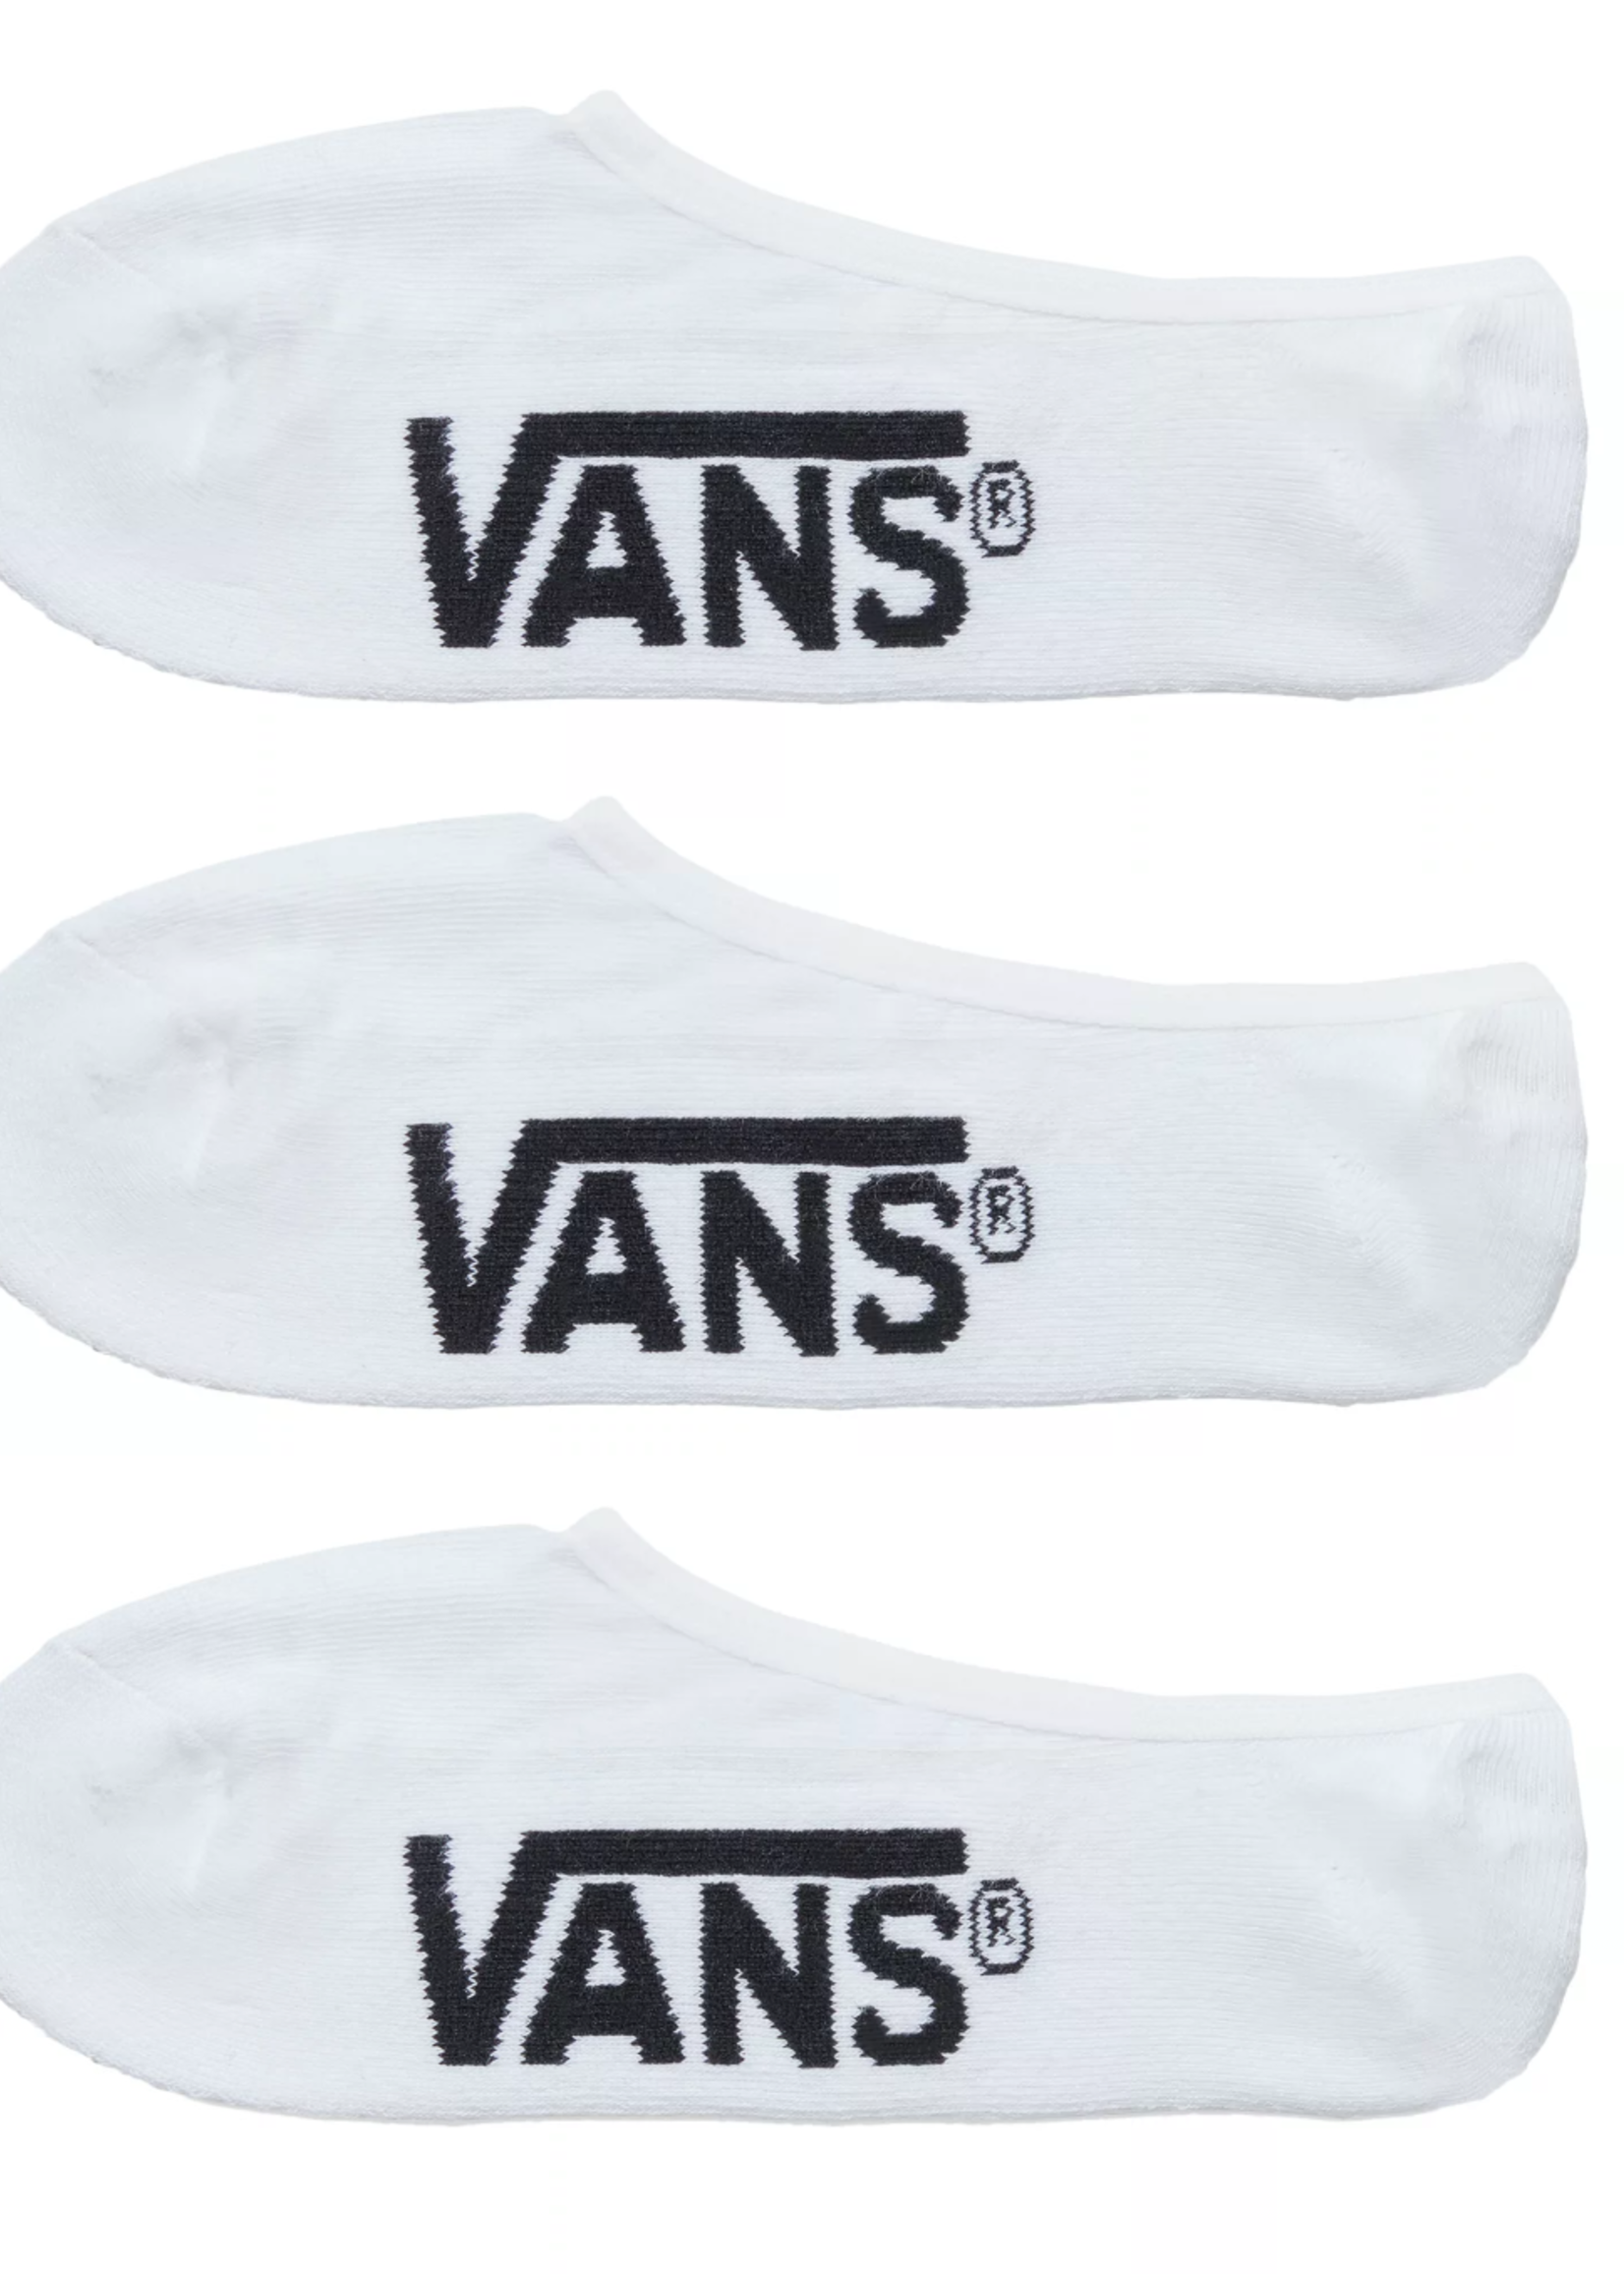 Vans No Show Sneaker Socks White